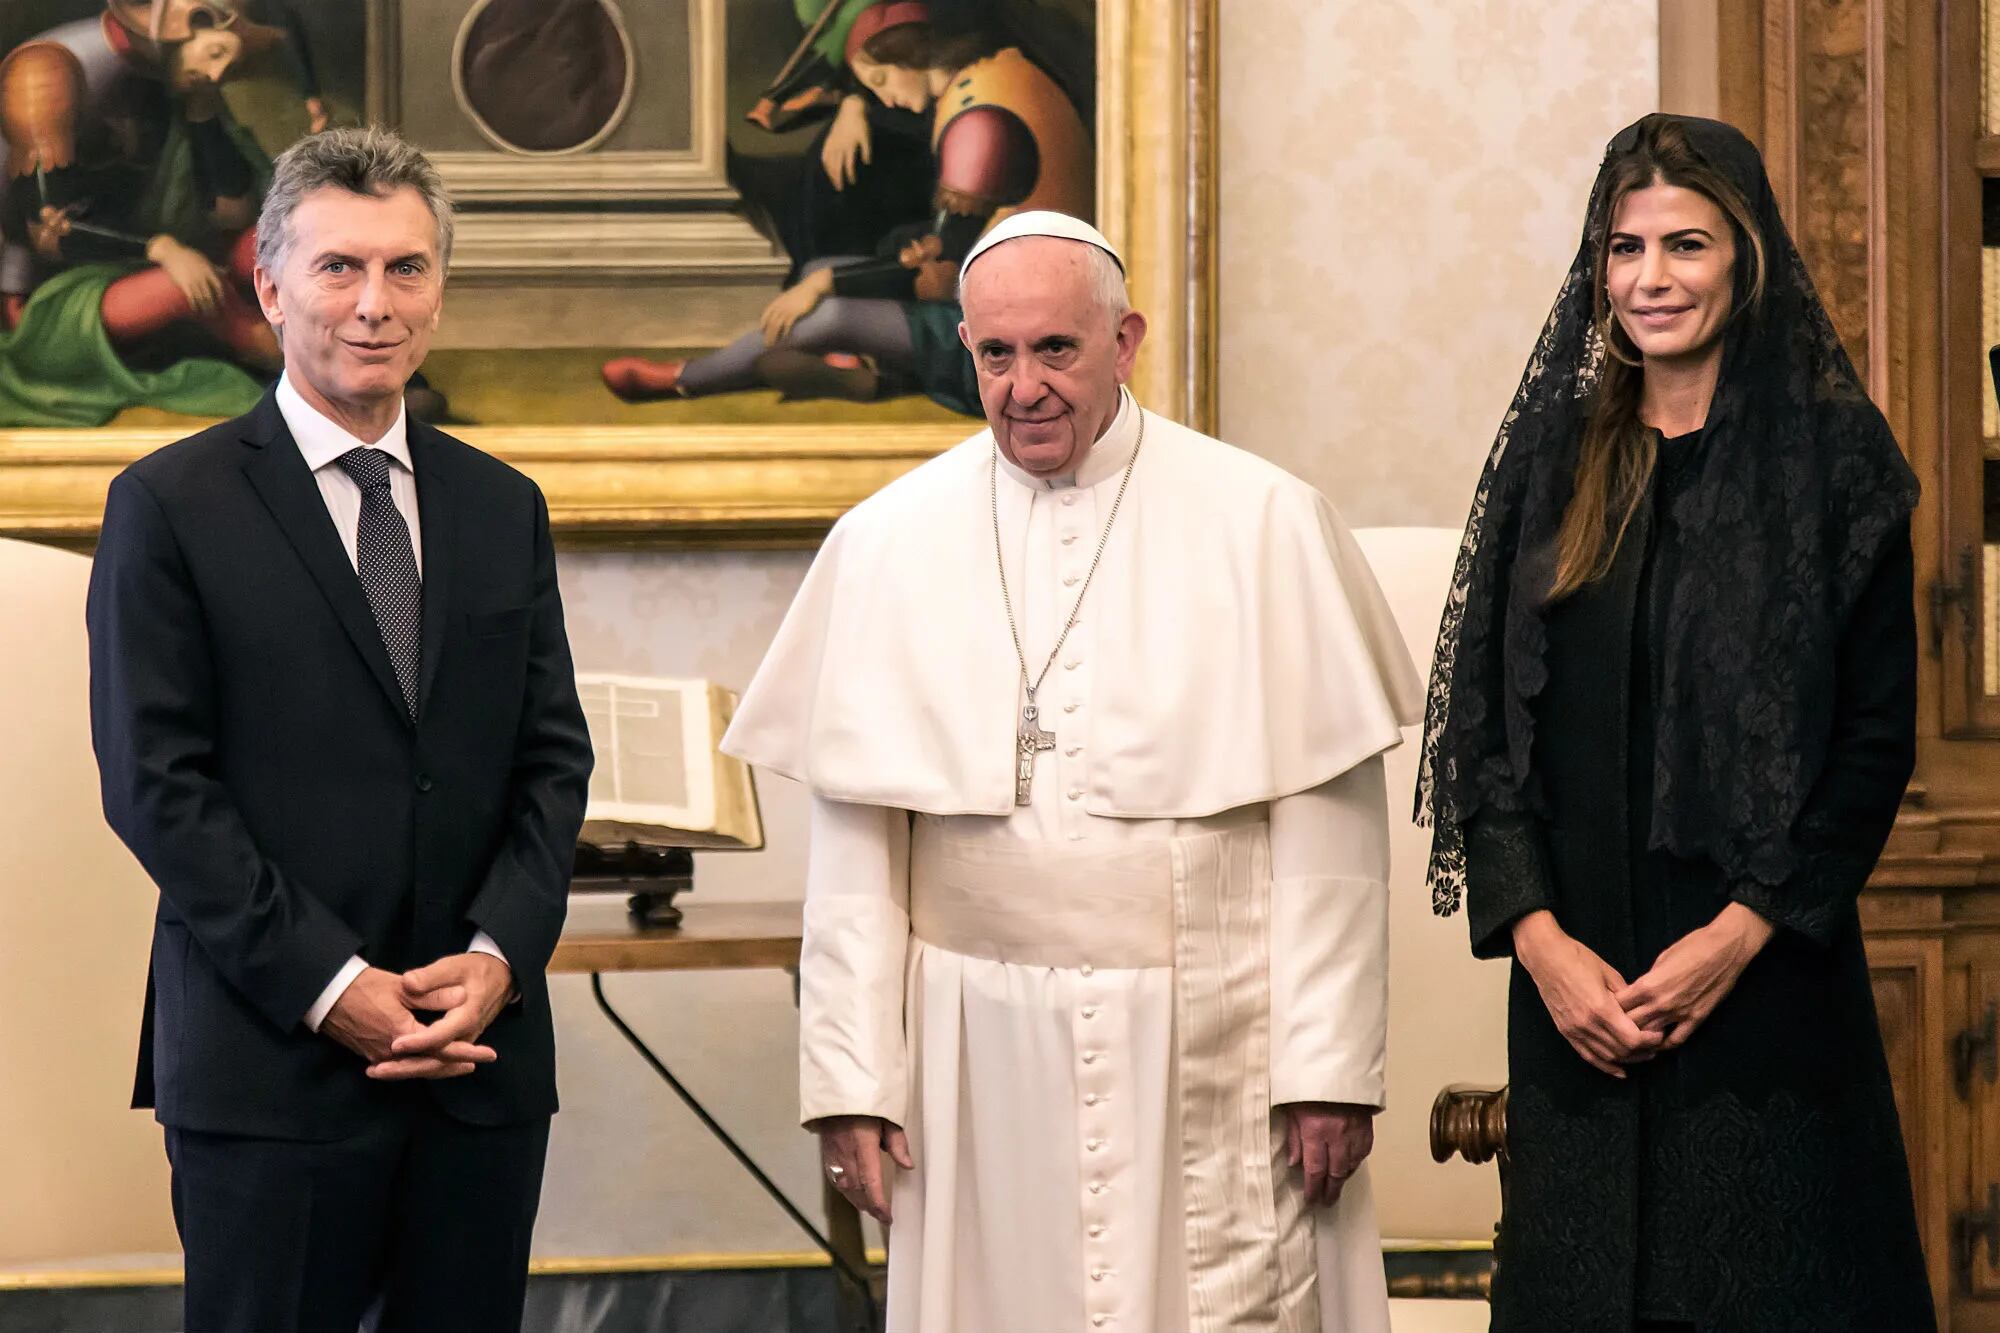 "A Mauricio Macri le pone una cara de tujes y le da 20 minutos de atención", dijo Chilavert sobre el encuentro del presidente con el Papa